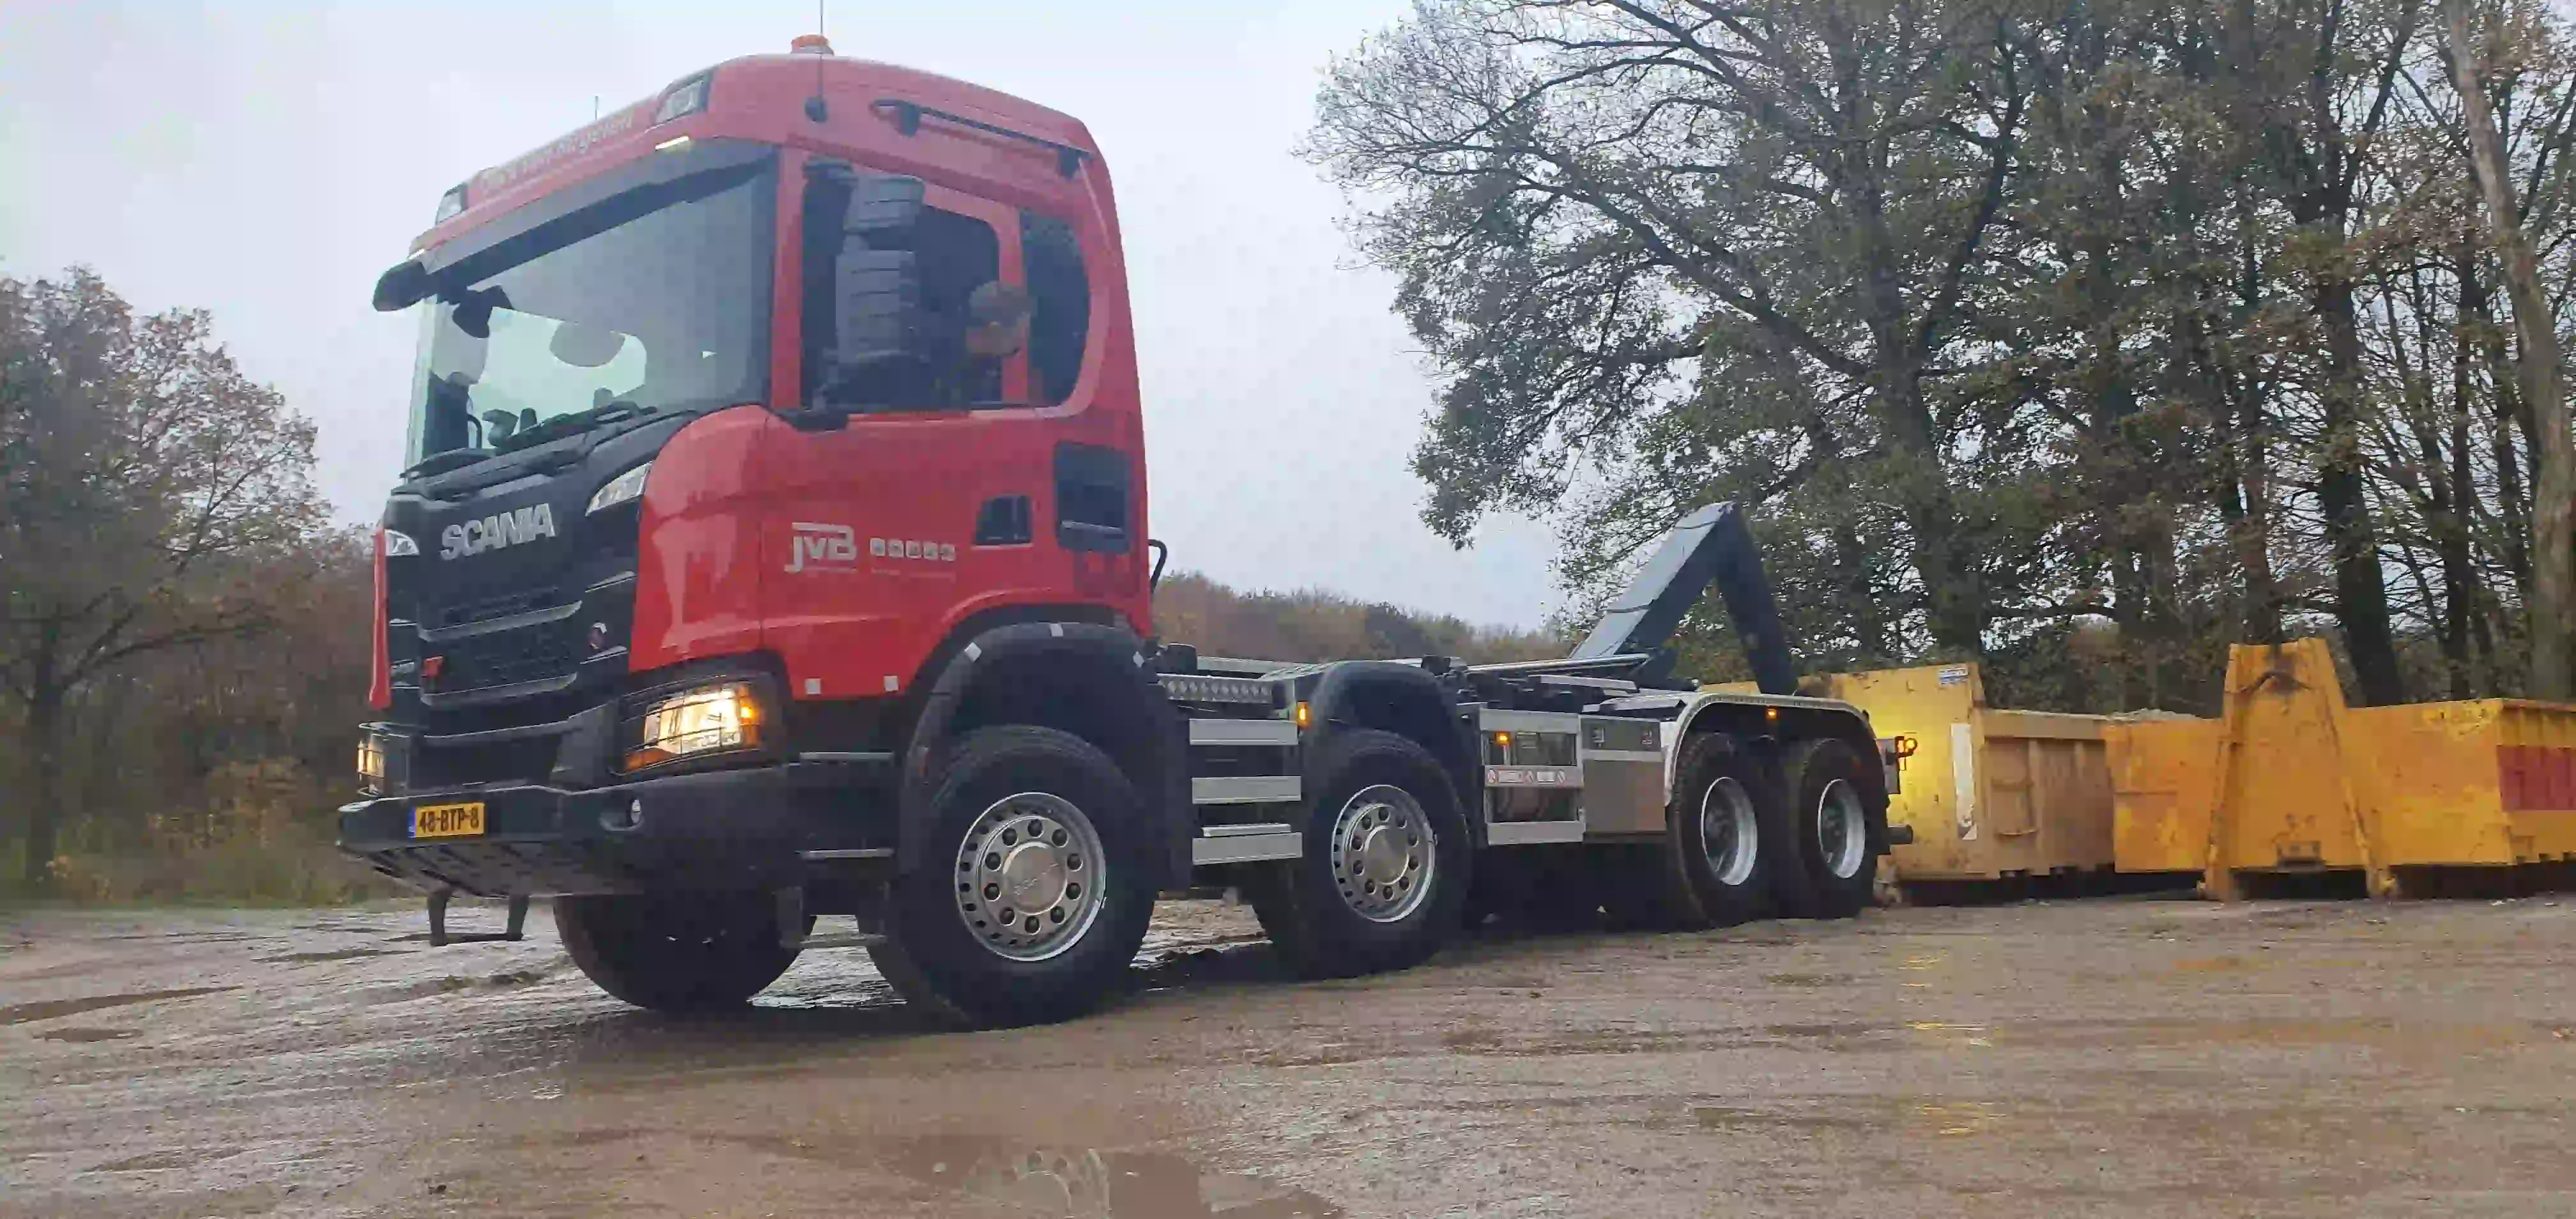 Loonbedrijf Jack van Birgelen uit Posterholt heeft een Scania G410 8x4 in ontvangst genomen